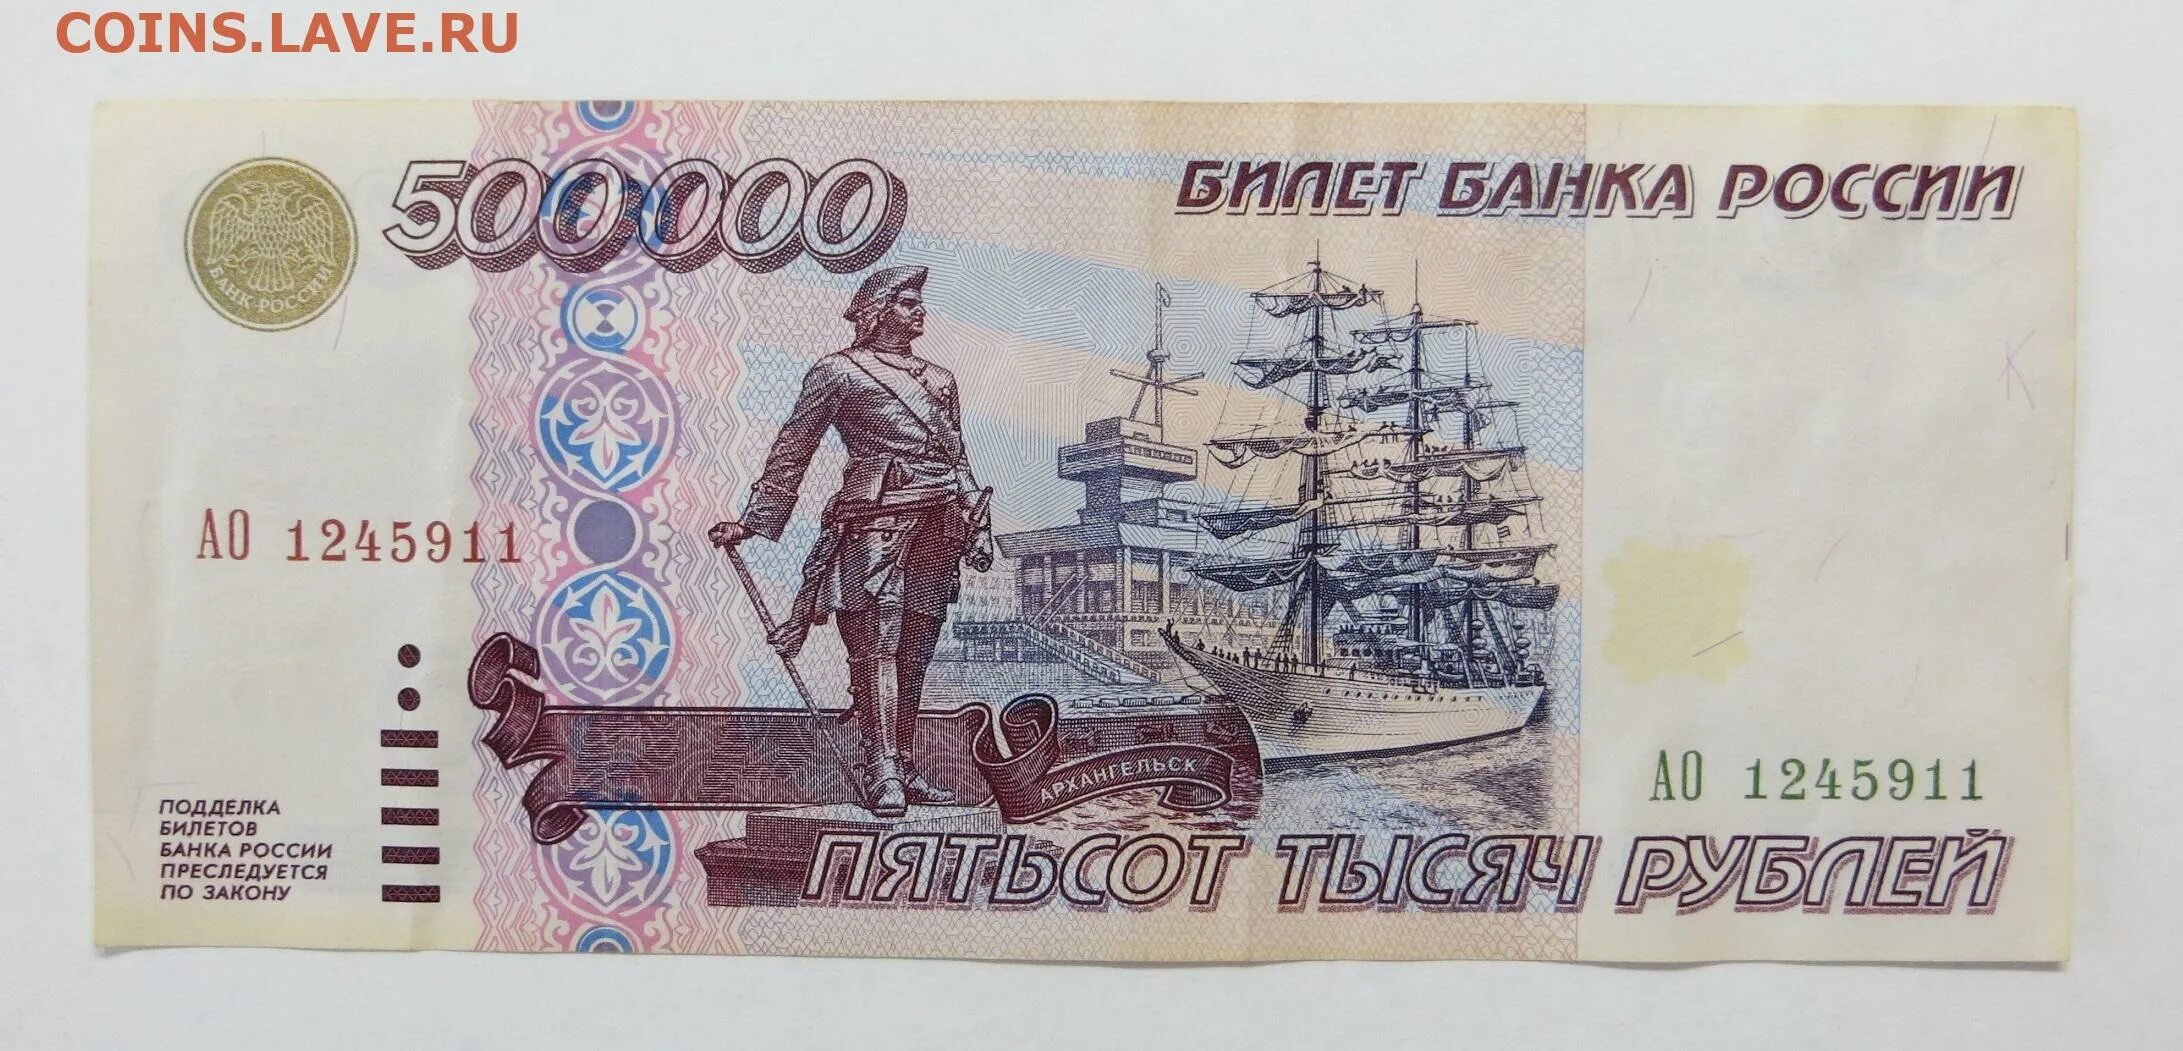 500000 рублей россии в долларах. 500000 Рублей 1995 года. Купюра 500 000 рублей 1995. Бумажные деньги 1995 года. 500 000 Рублей 1995 года.